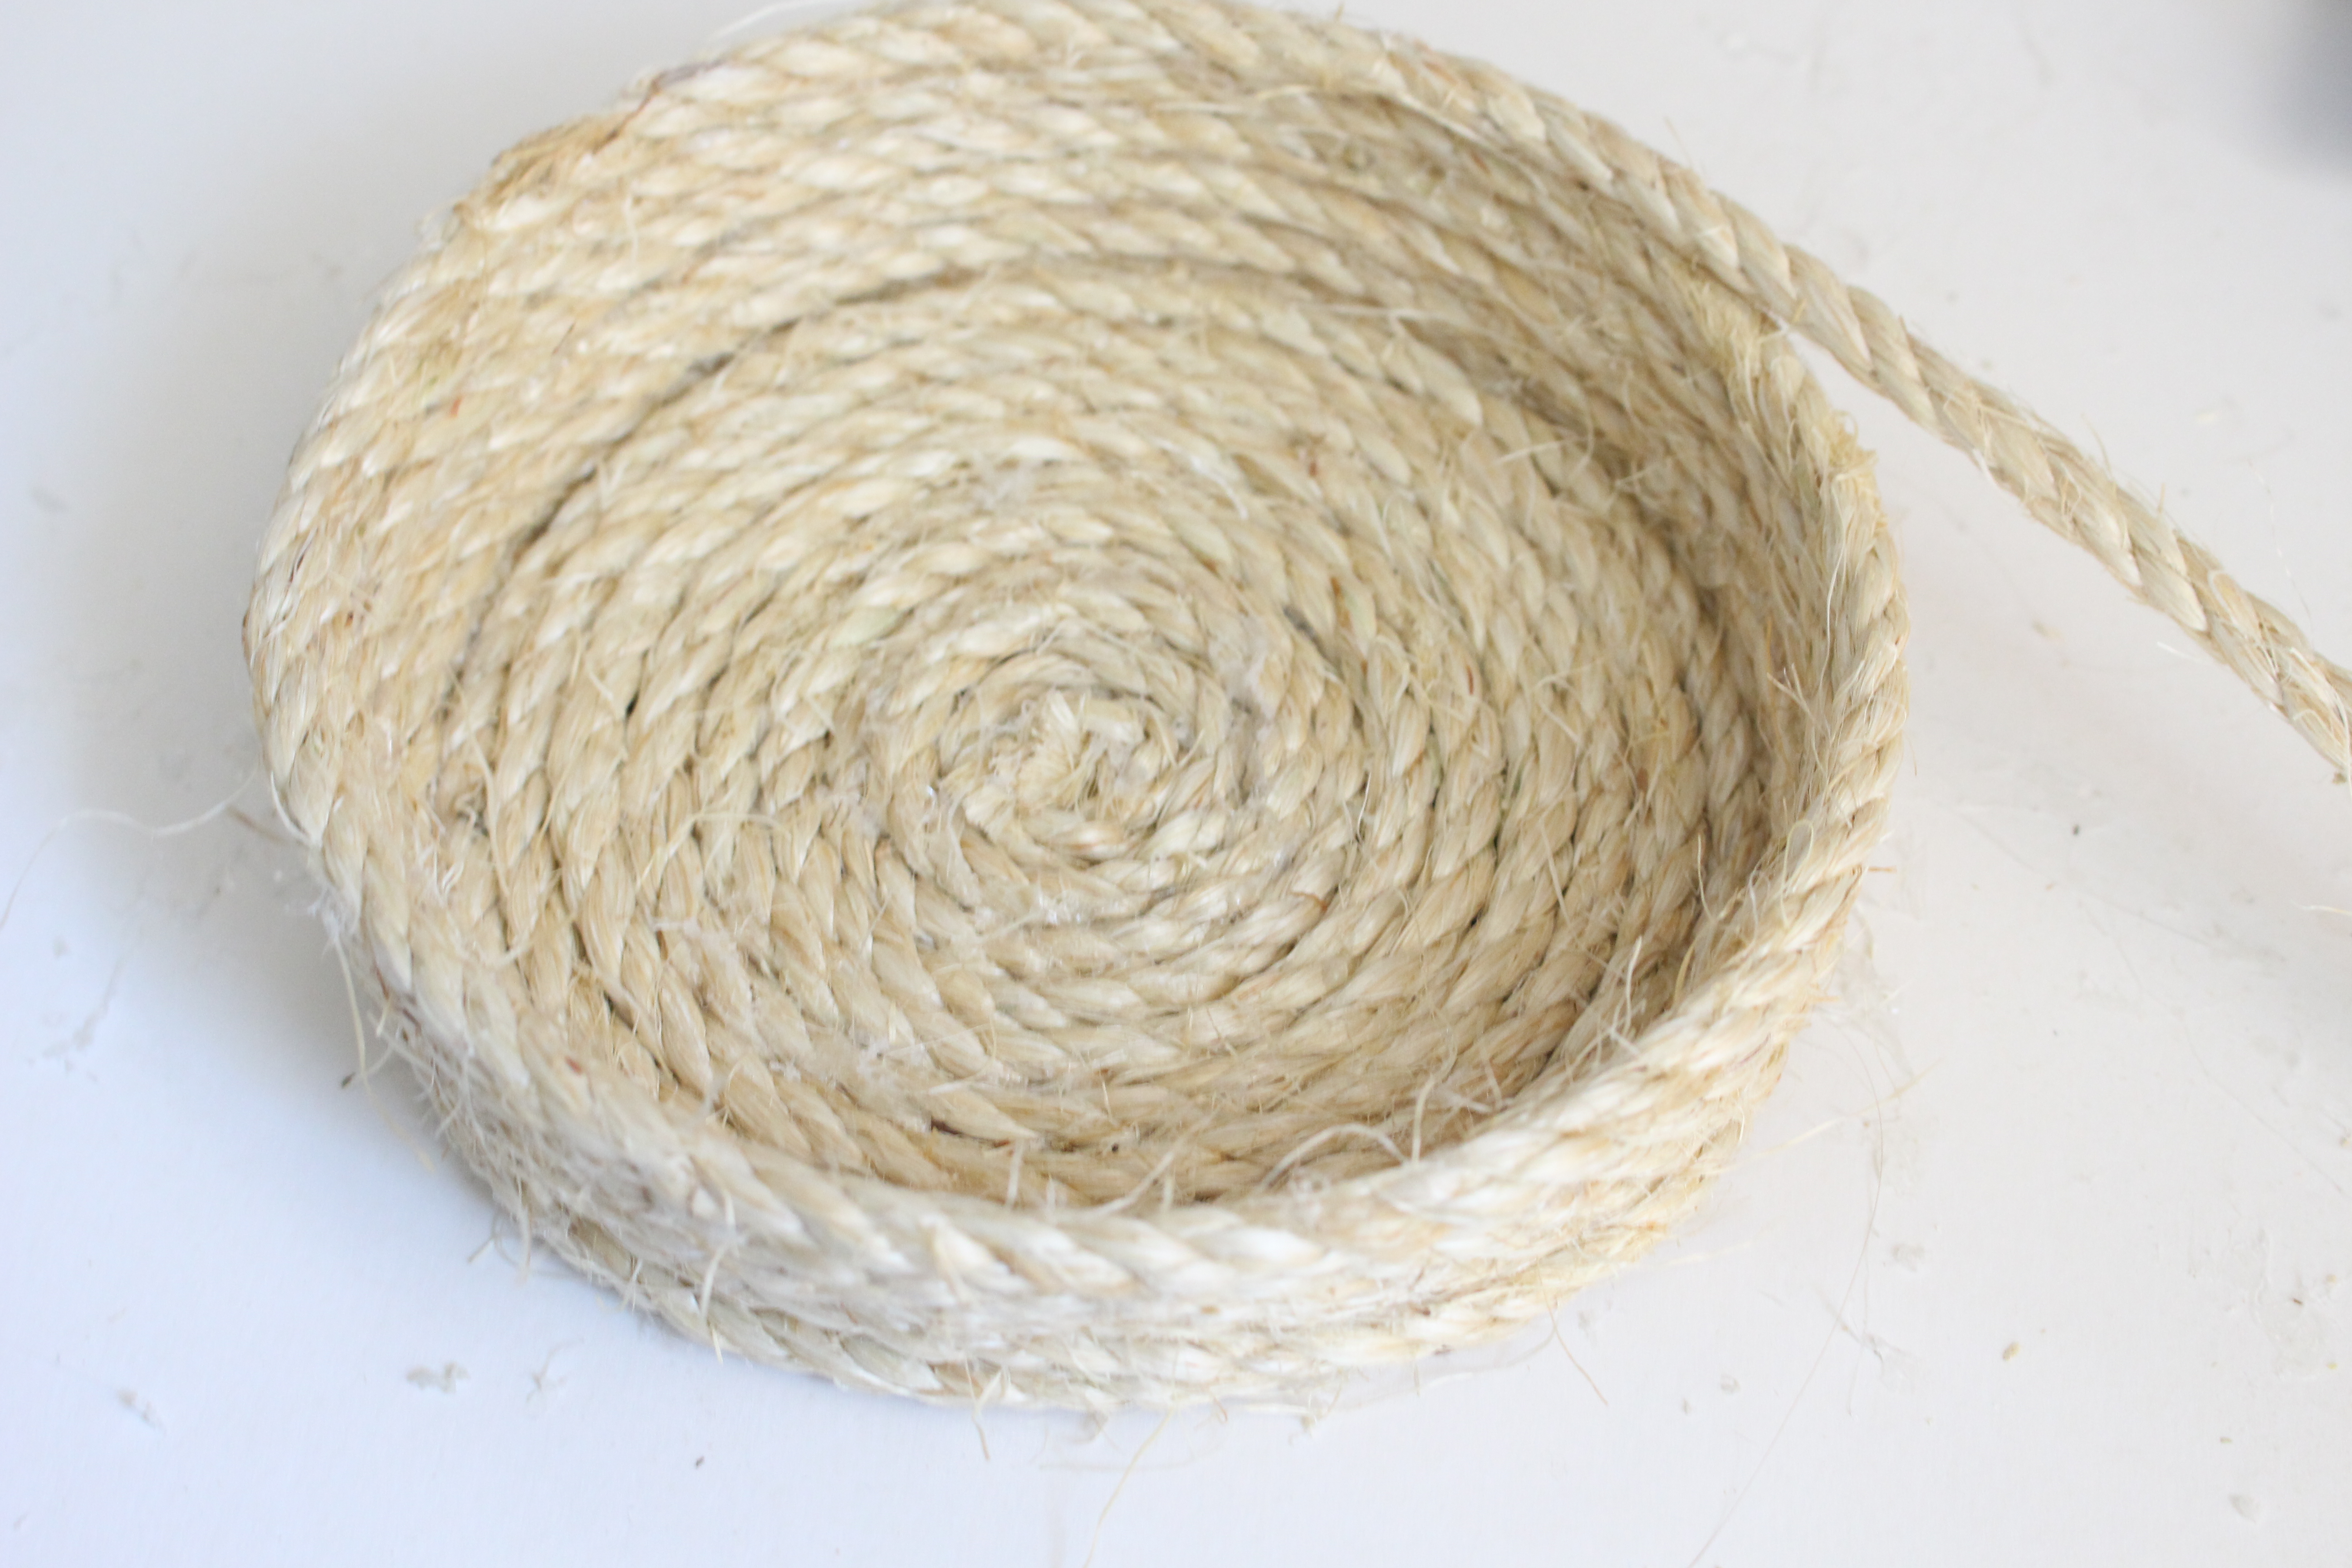 Sisal Rope Basket with Tassels- DIY rope projects- how to make a rope basket- how to make tassels- crafts- rope- DIY